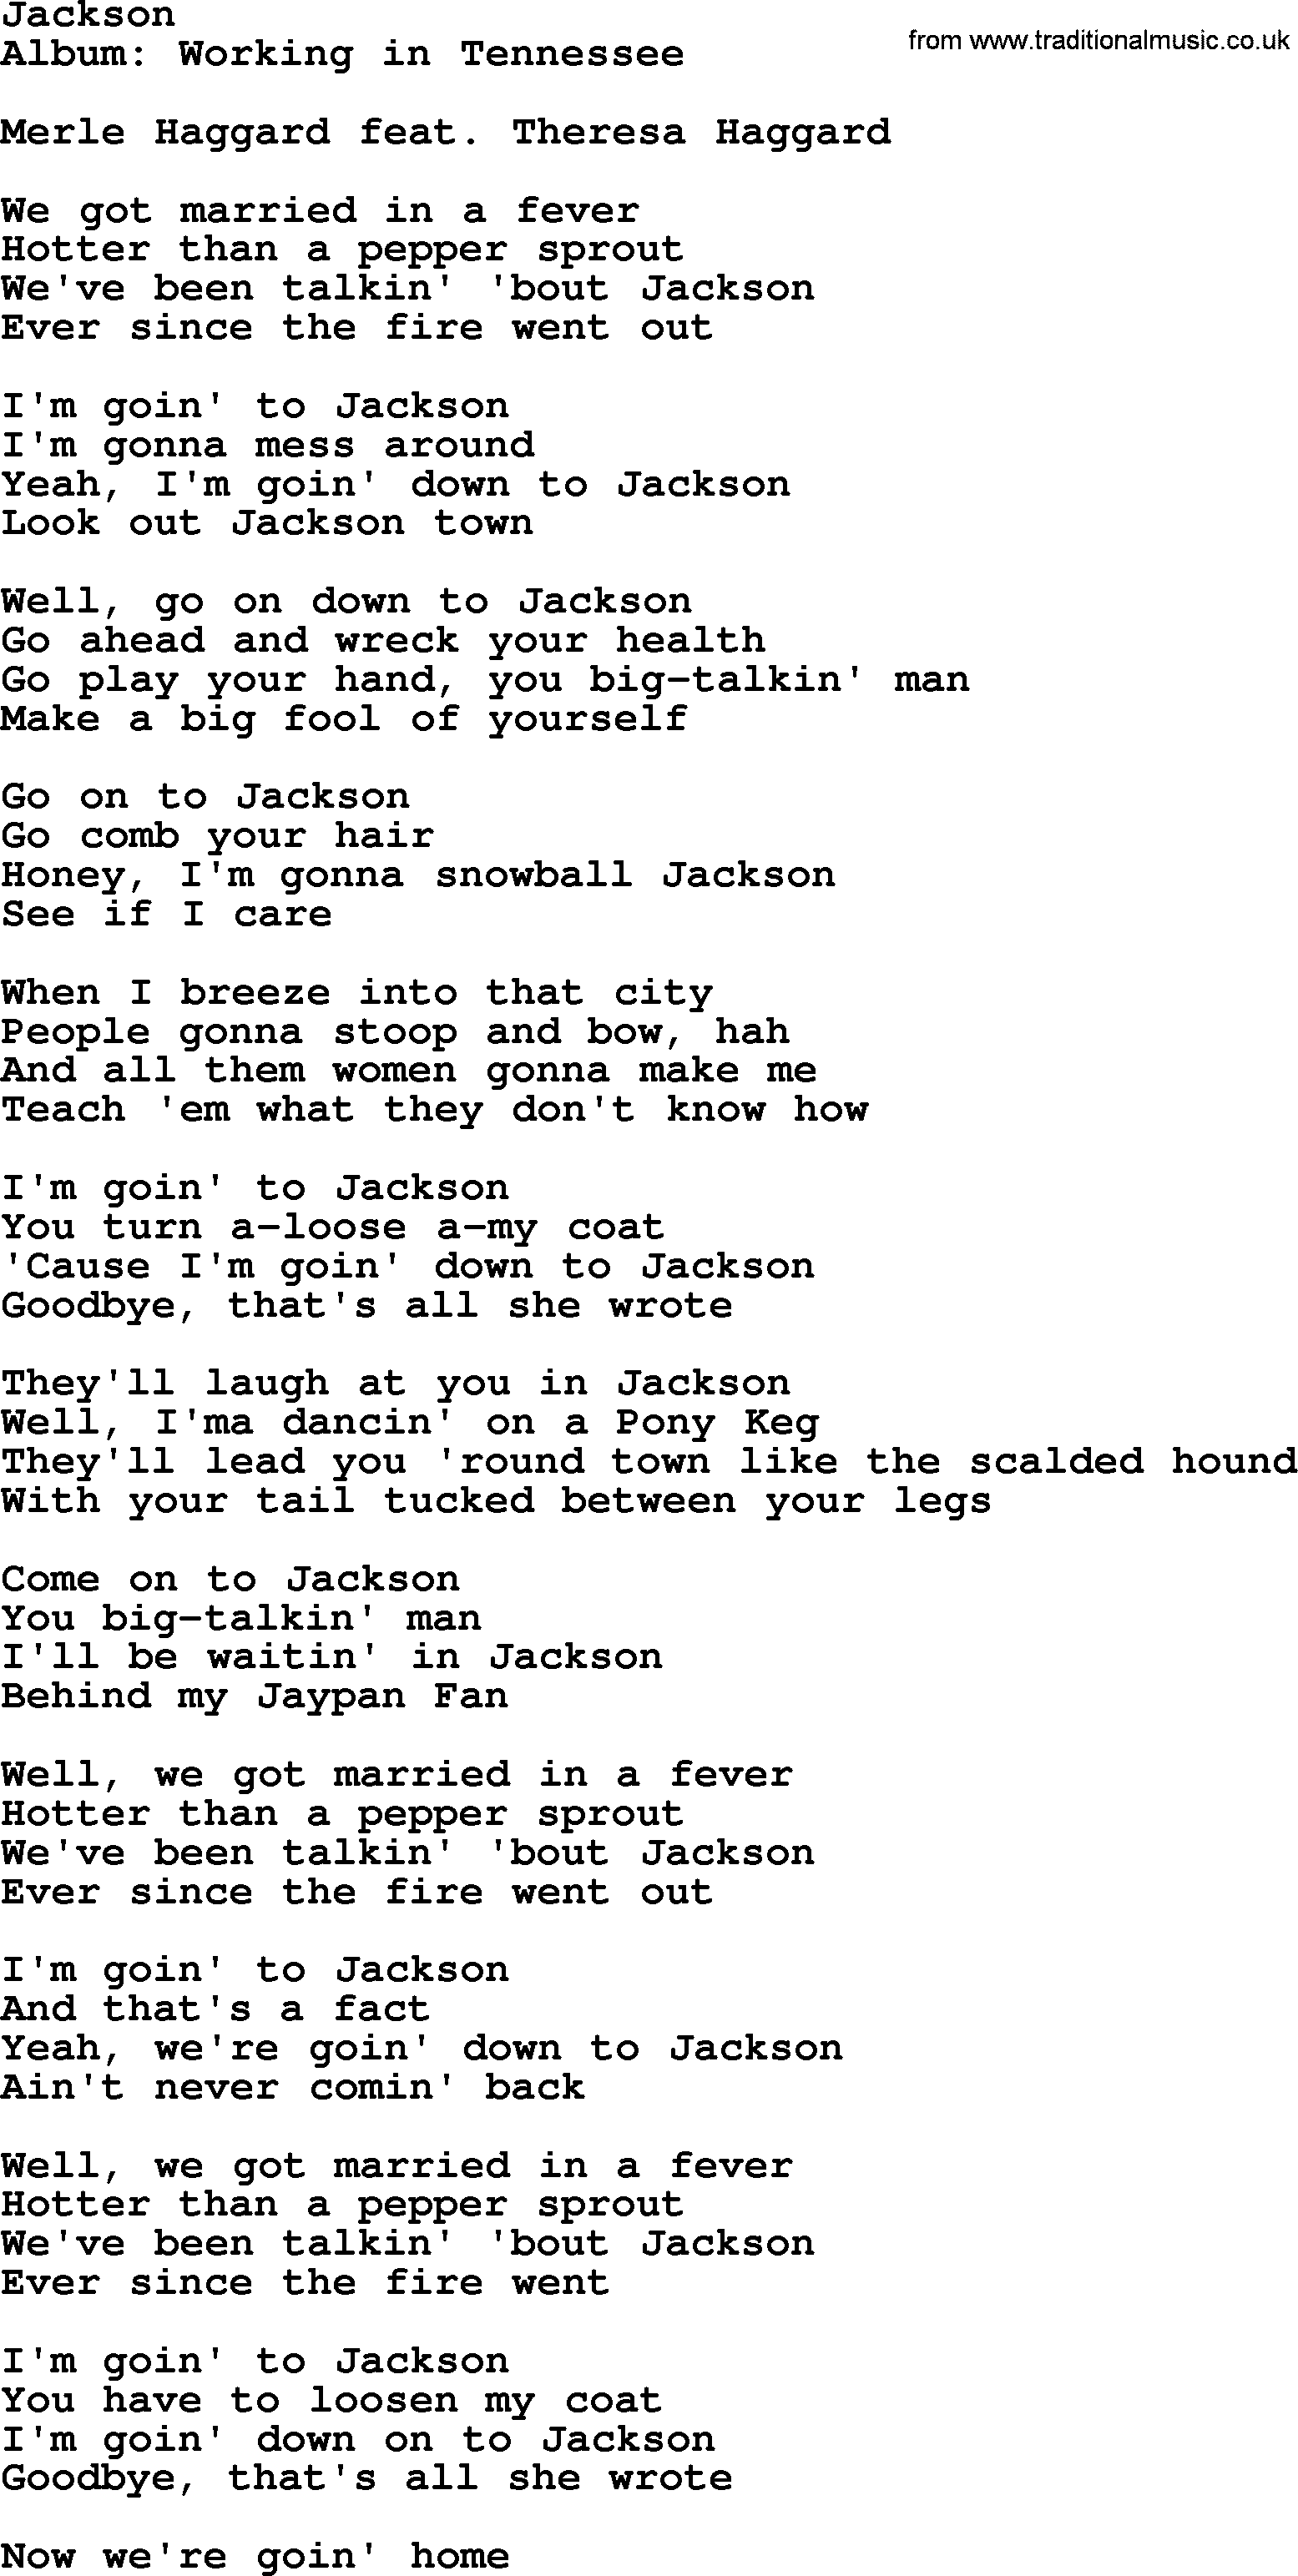 Merle Haggard song: Jackson, lyrics.